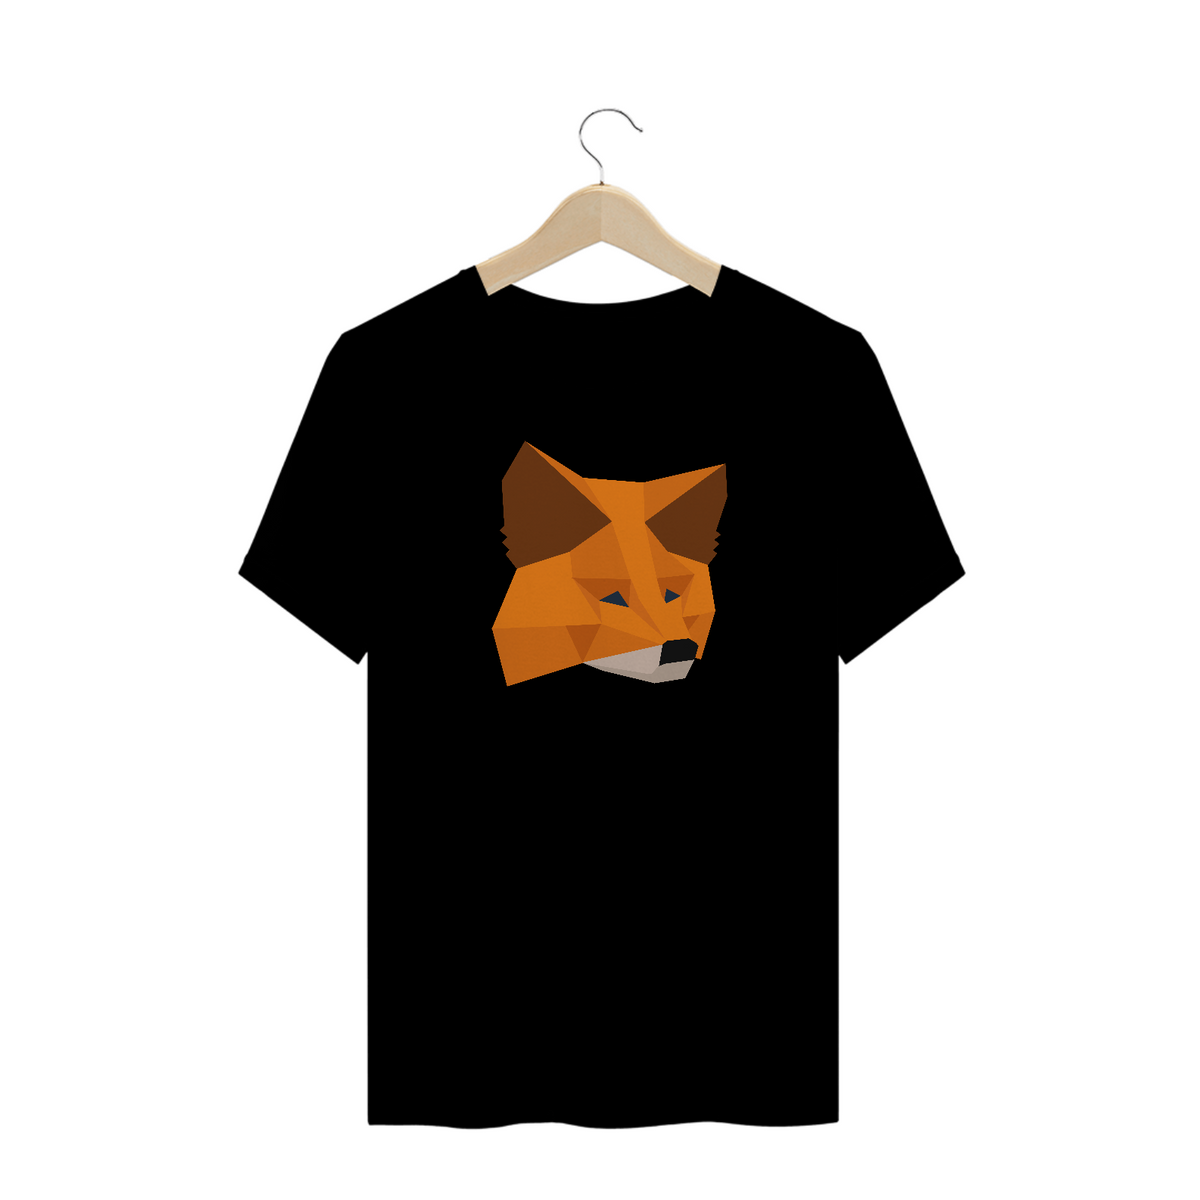 Nome do produto: Criptomoedas - Camisa Metamask